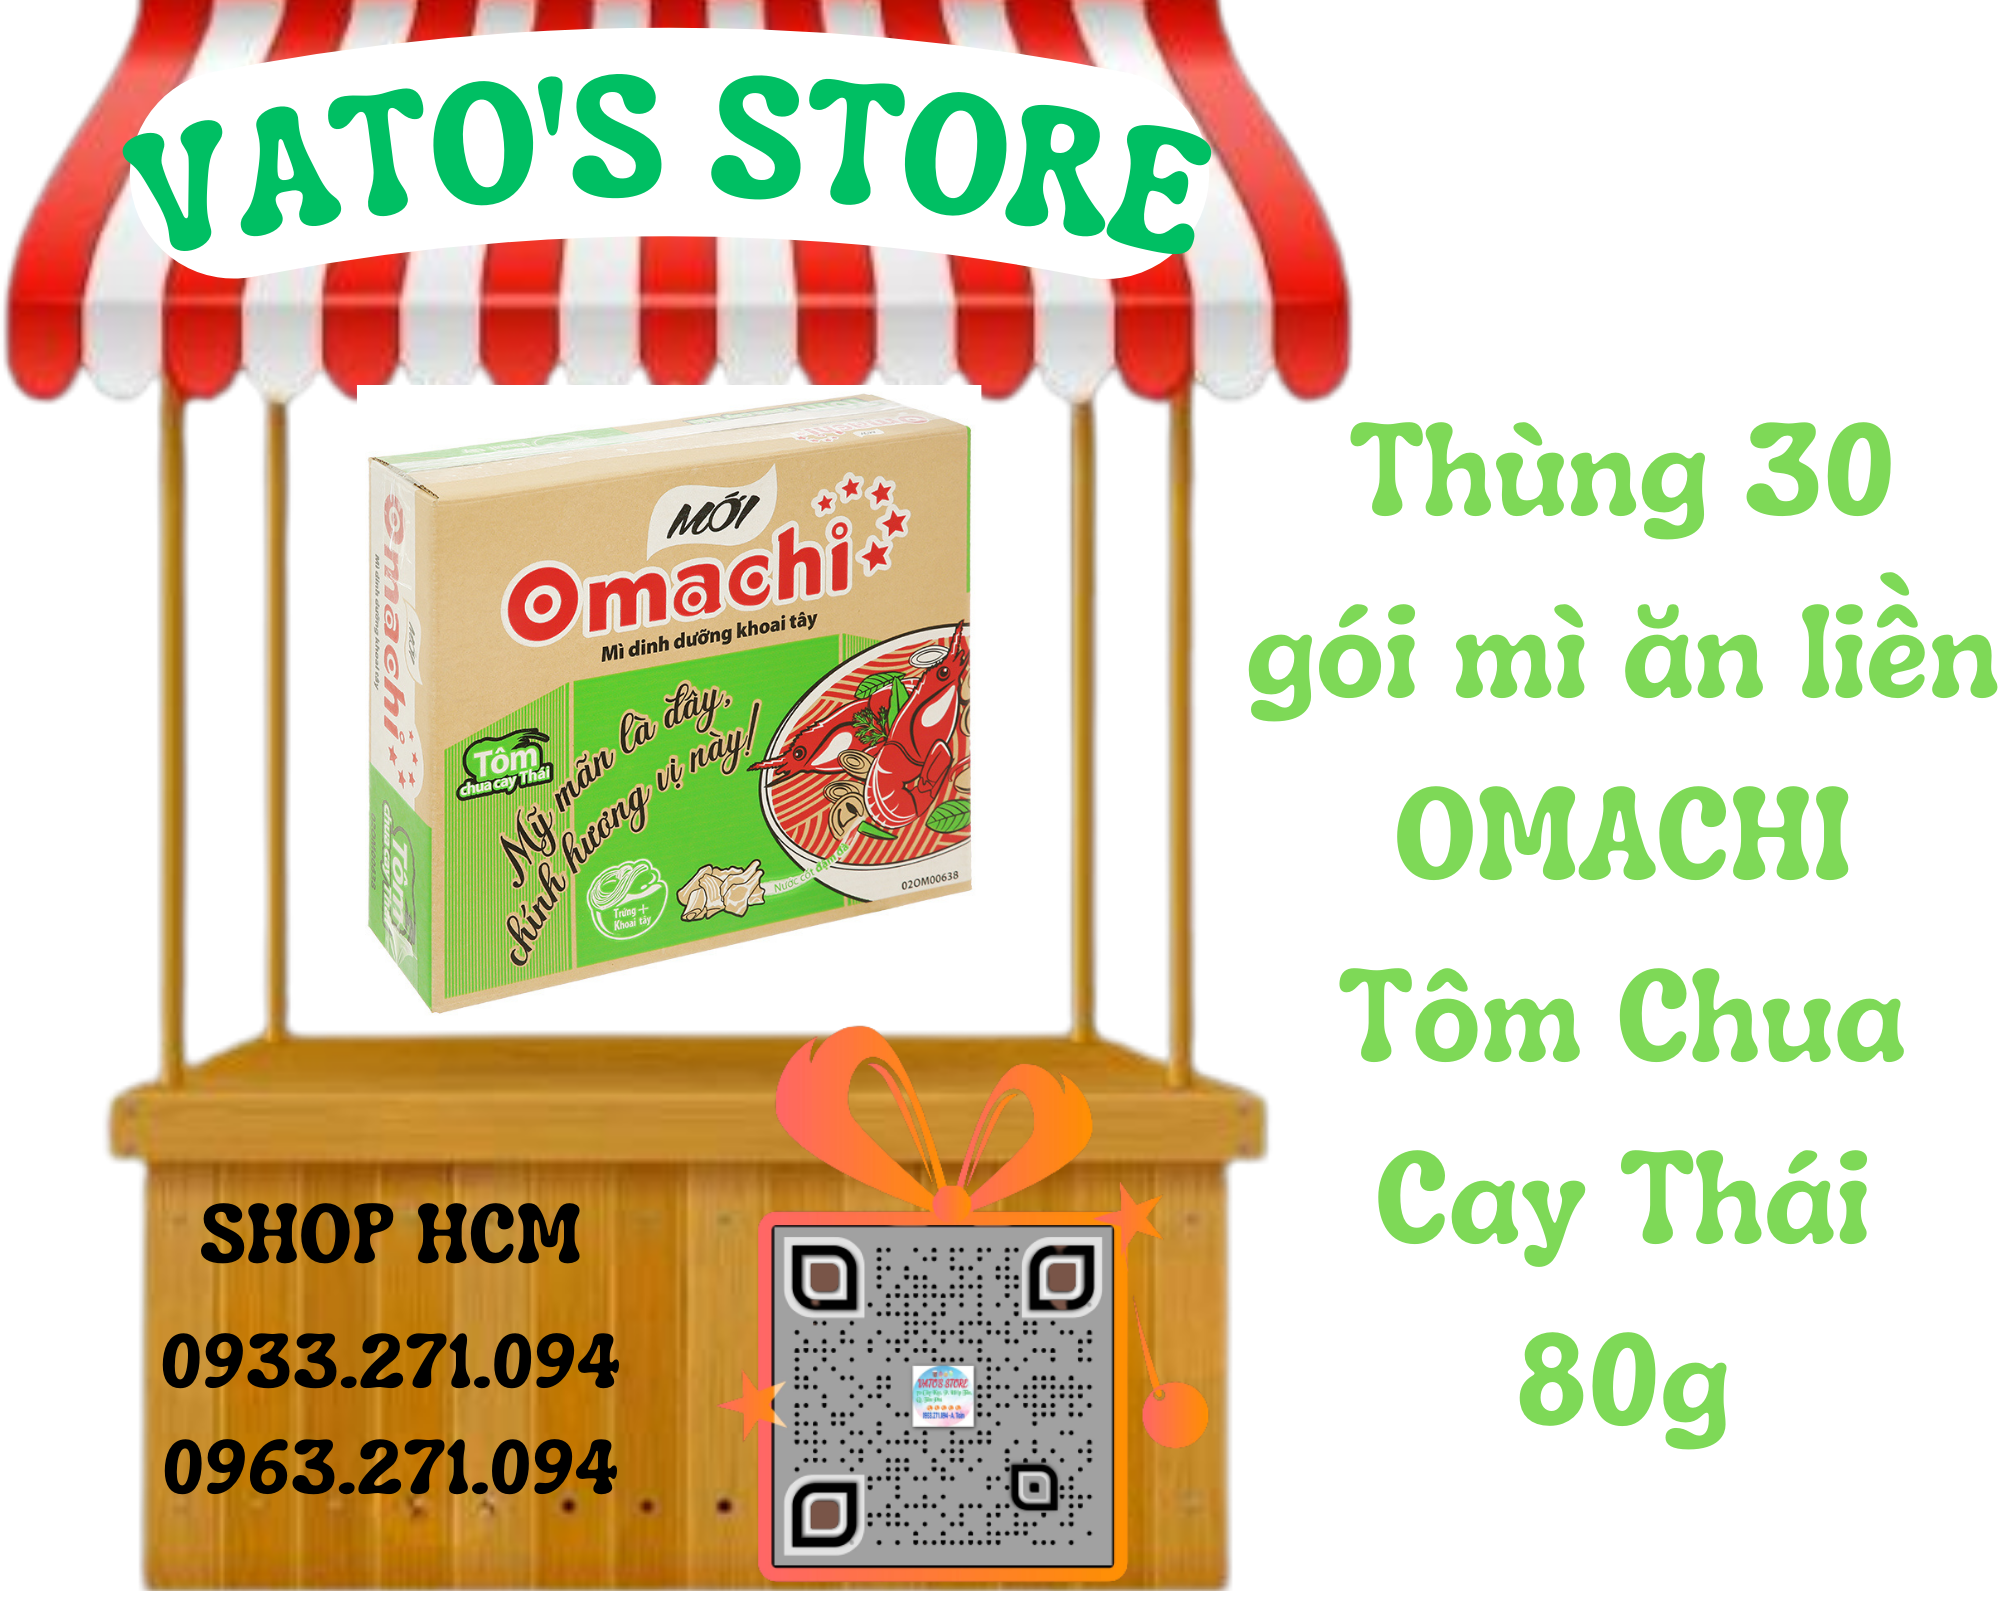 Thùng 30 gói mì khoai tây Omachi tôm chua cay thái 80g / Combo 6 gói mì khoai tây Omachi tôm chua cay thái 80g